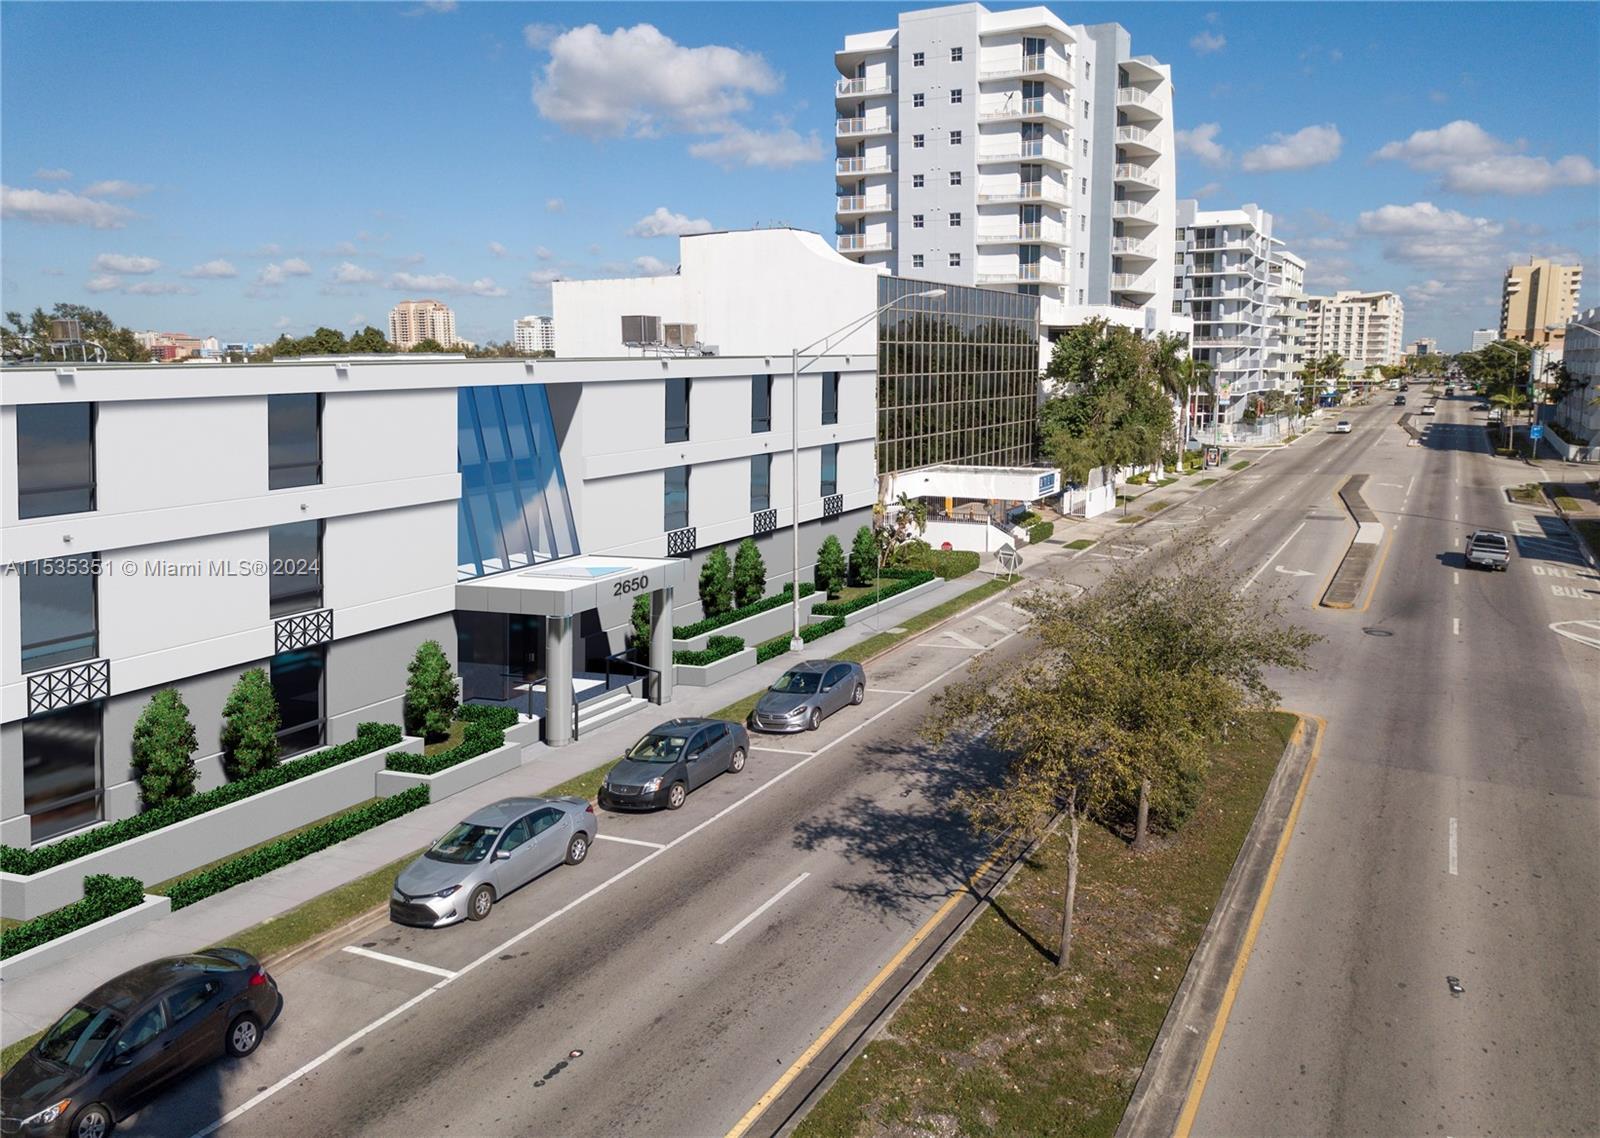 Photo of 2650 SW 27th Ave in Miami, FL